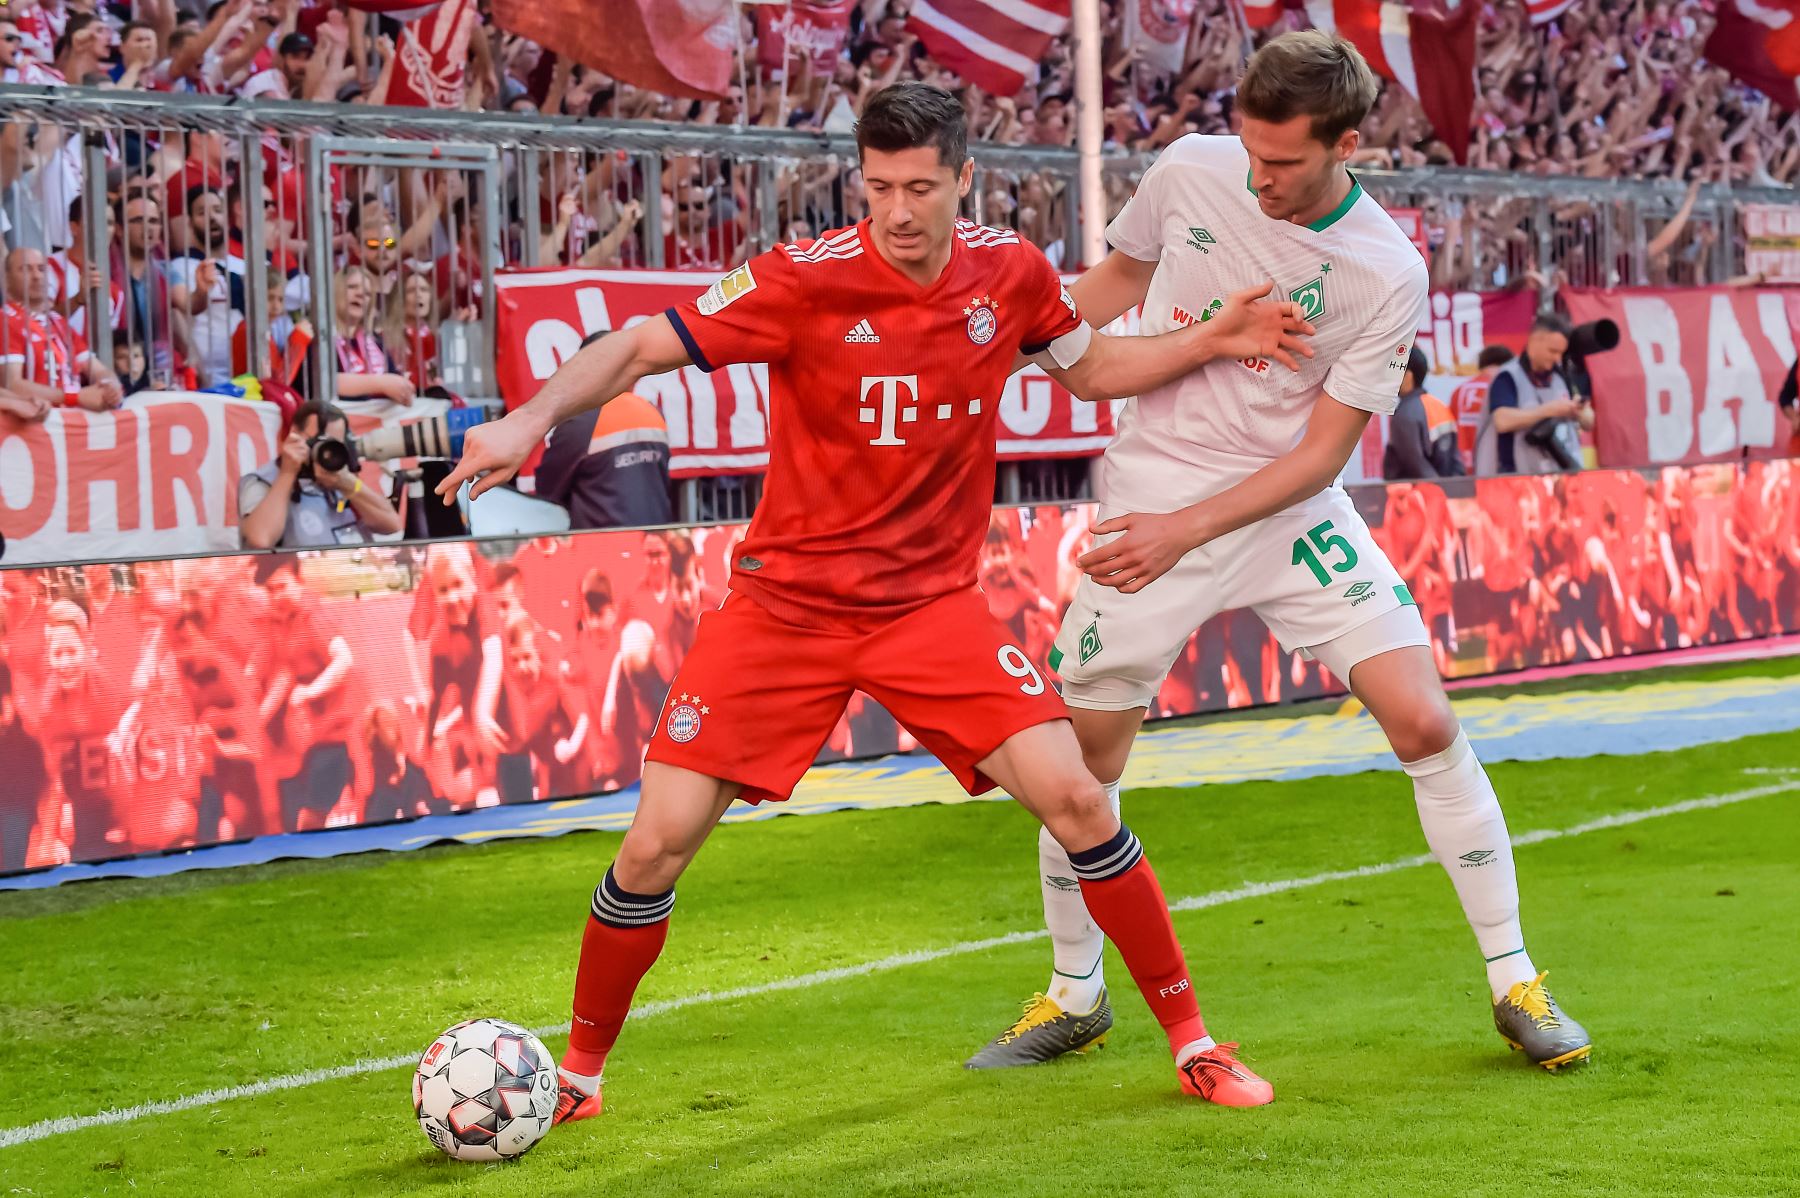 El delantero polaco del Bayern Munich, Robert Lewandowski, y el defensor alemán Bremen Langkamp lucharon por el balón durante el partido de fútbol de la Bundesliga de la primera división alemana FC Bayern Munich vs SV Werder Bremen. Foto:AFP